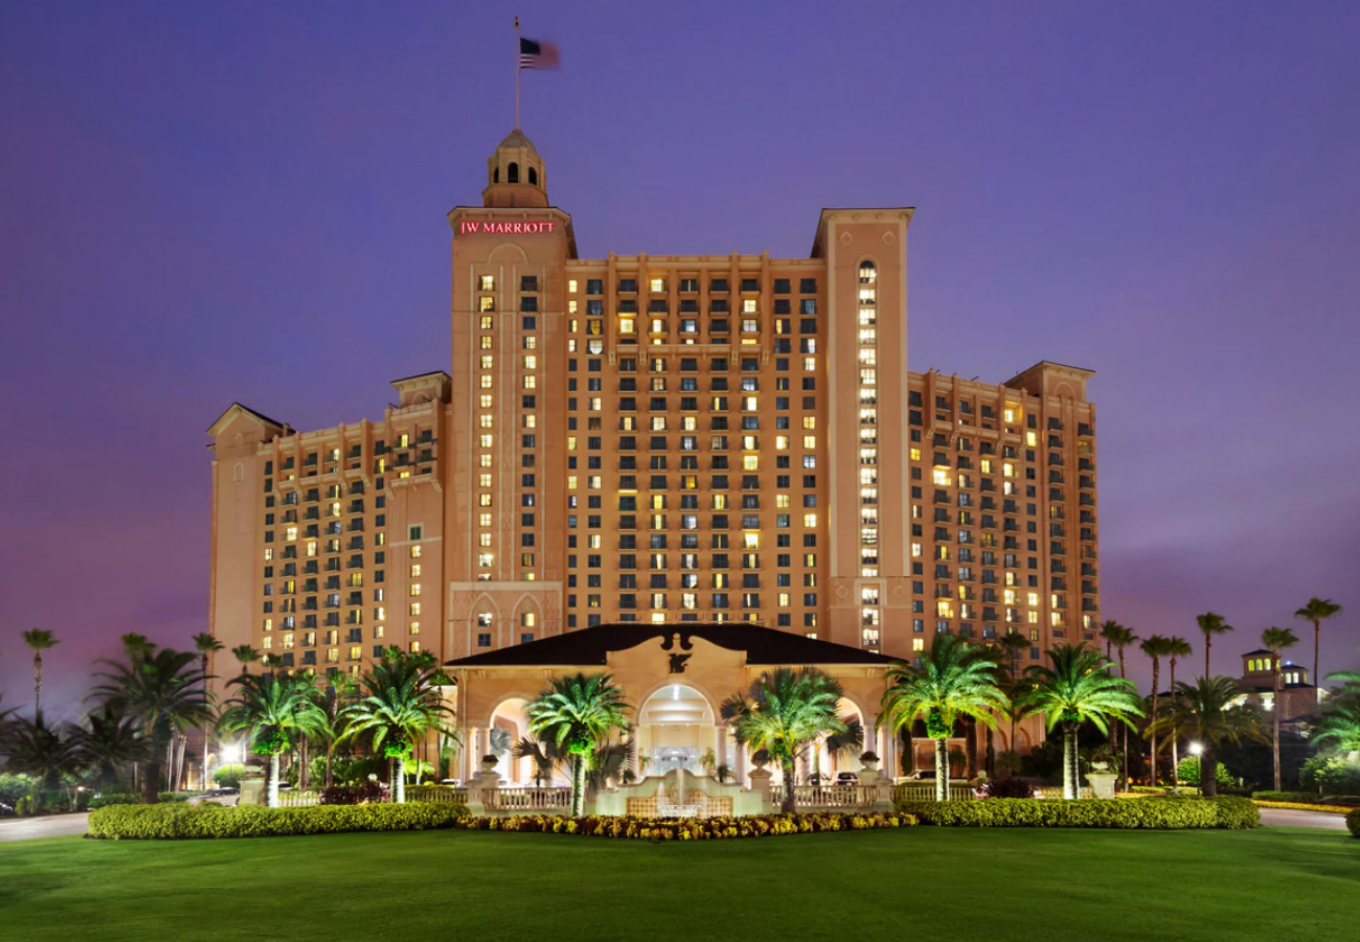 20 Top Hotels Near International Drive Orlando   CuddlyNest